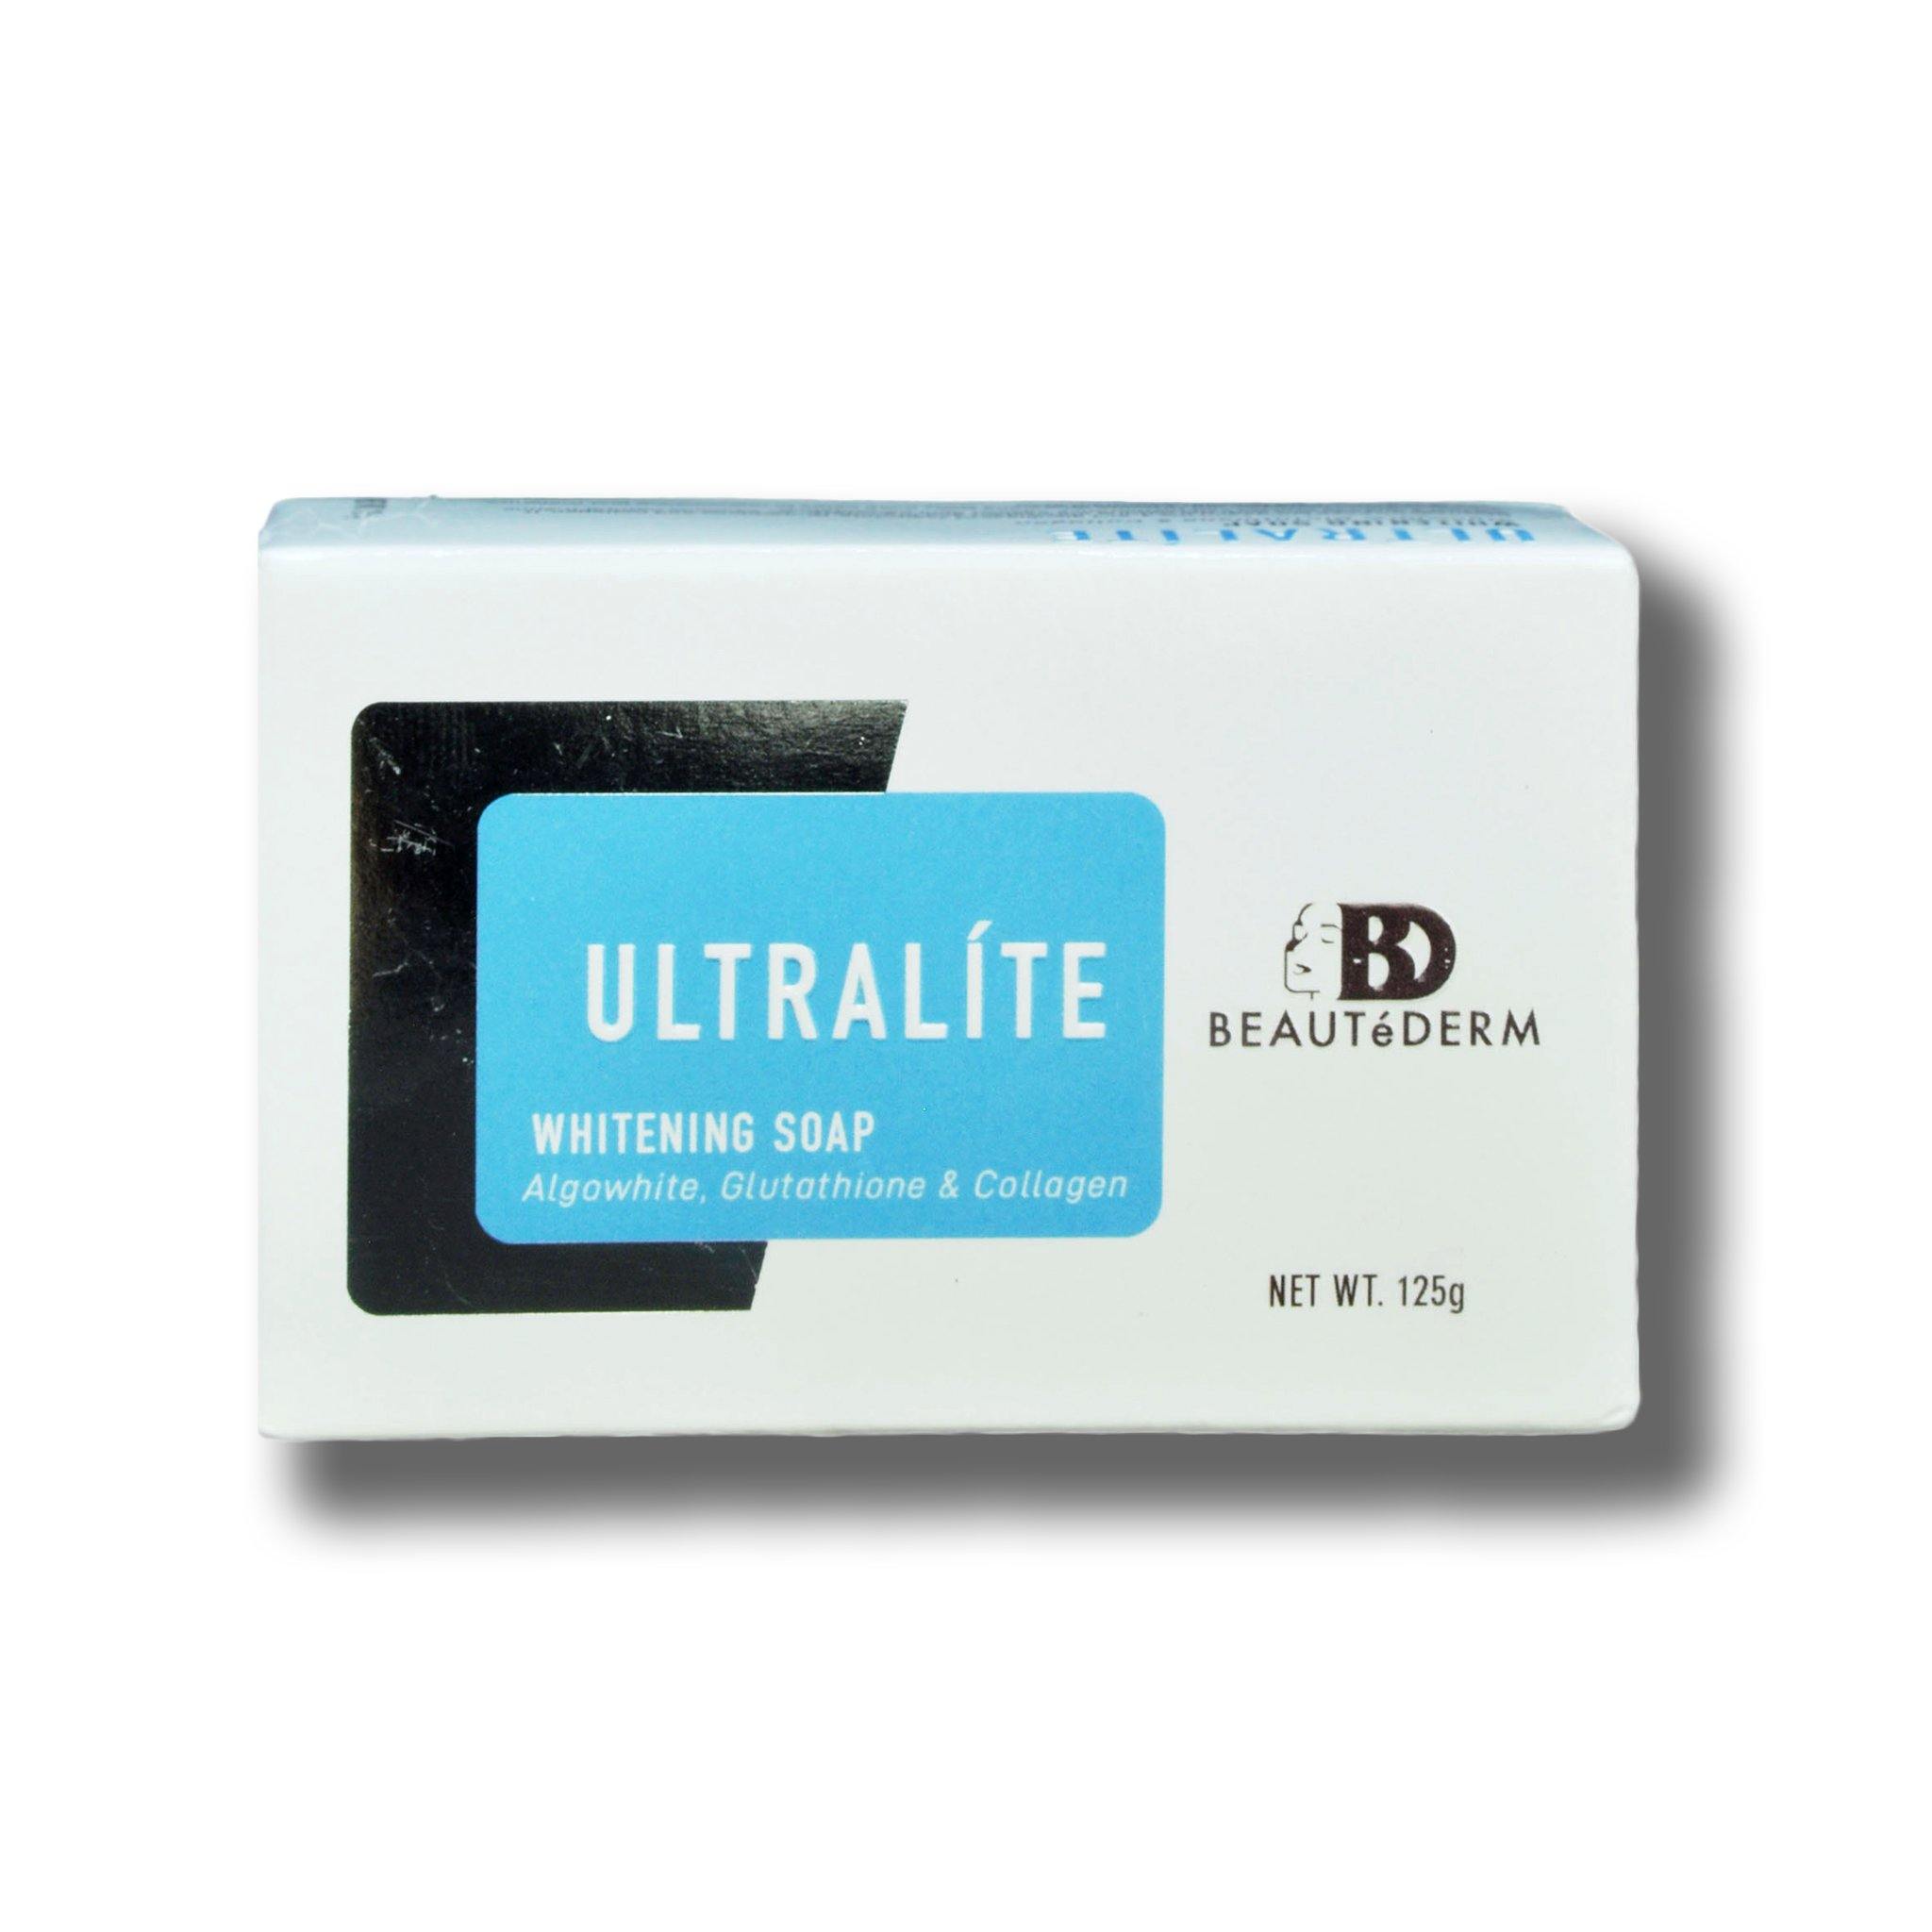 Ultralie Whitening Soap (with Algowhite, Glutathione & Collagen), 125g, by Beautederm